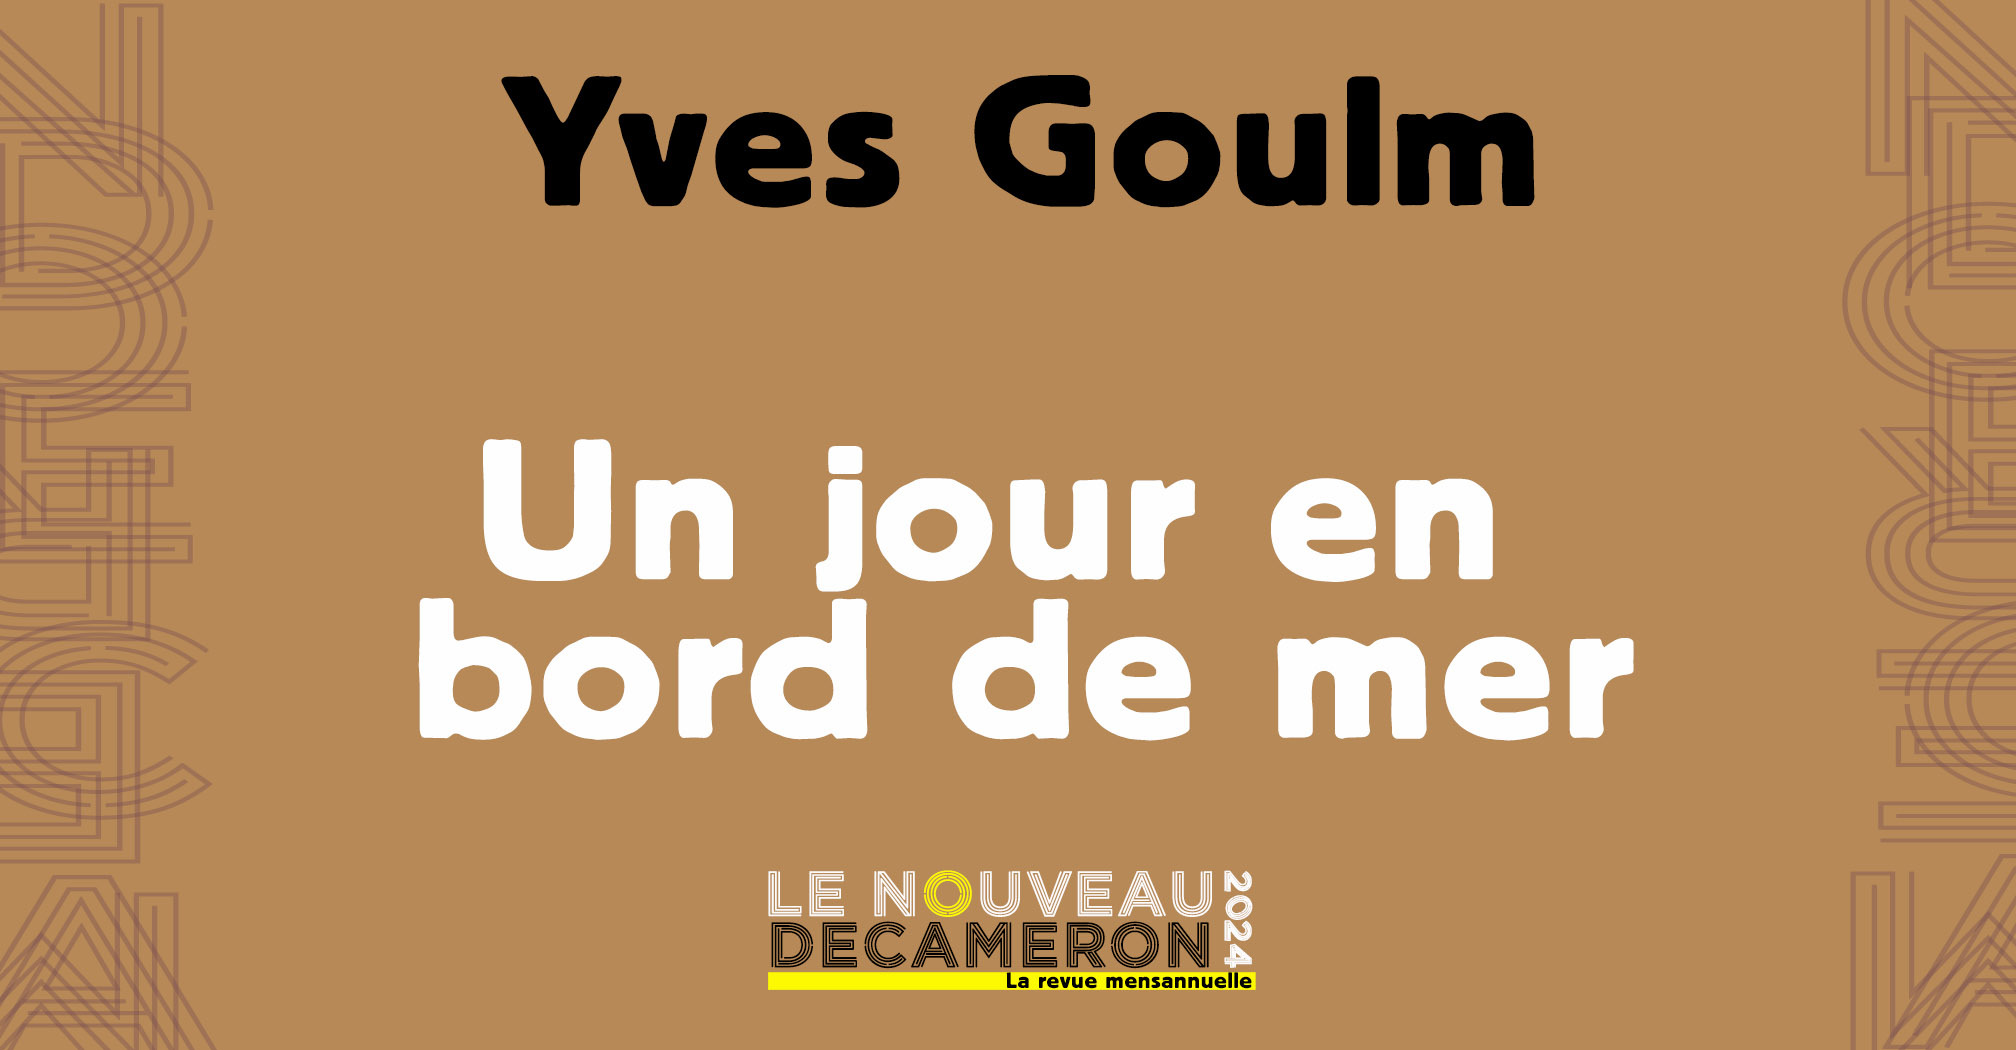 Yves Goulm - Un jour en bord de mer